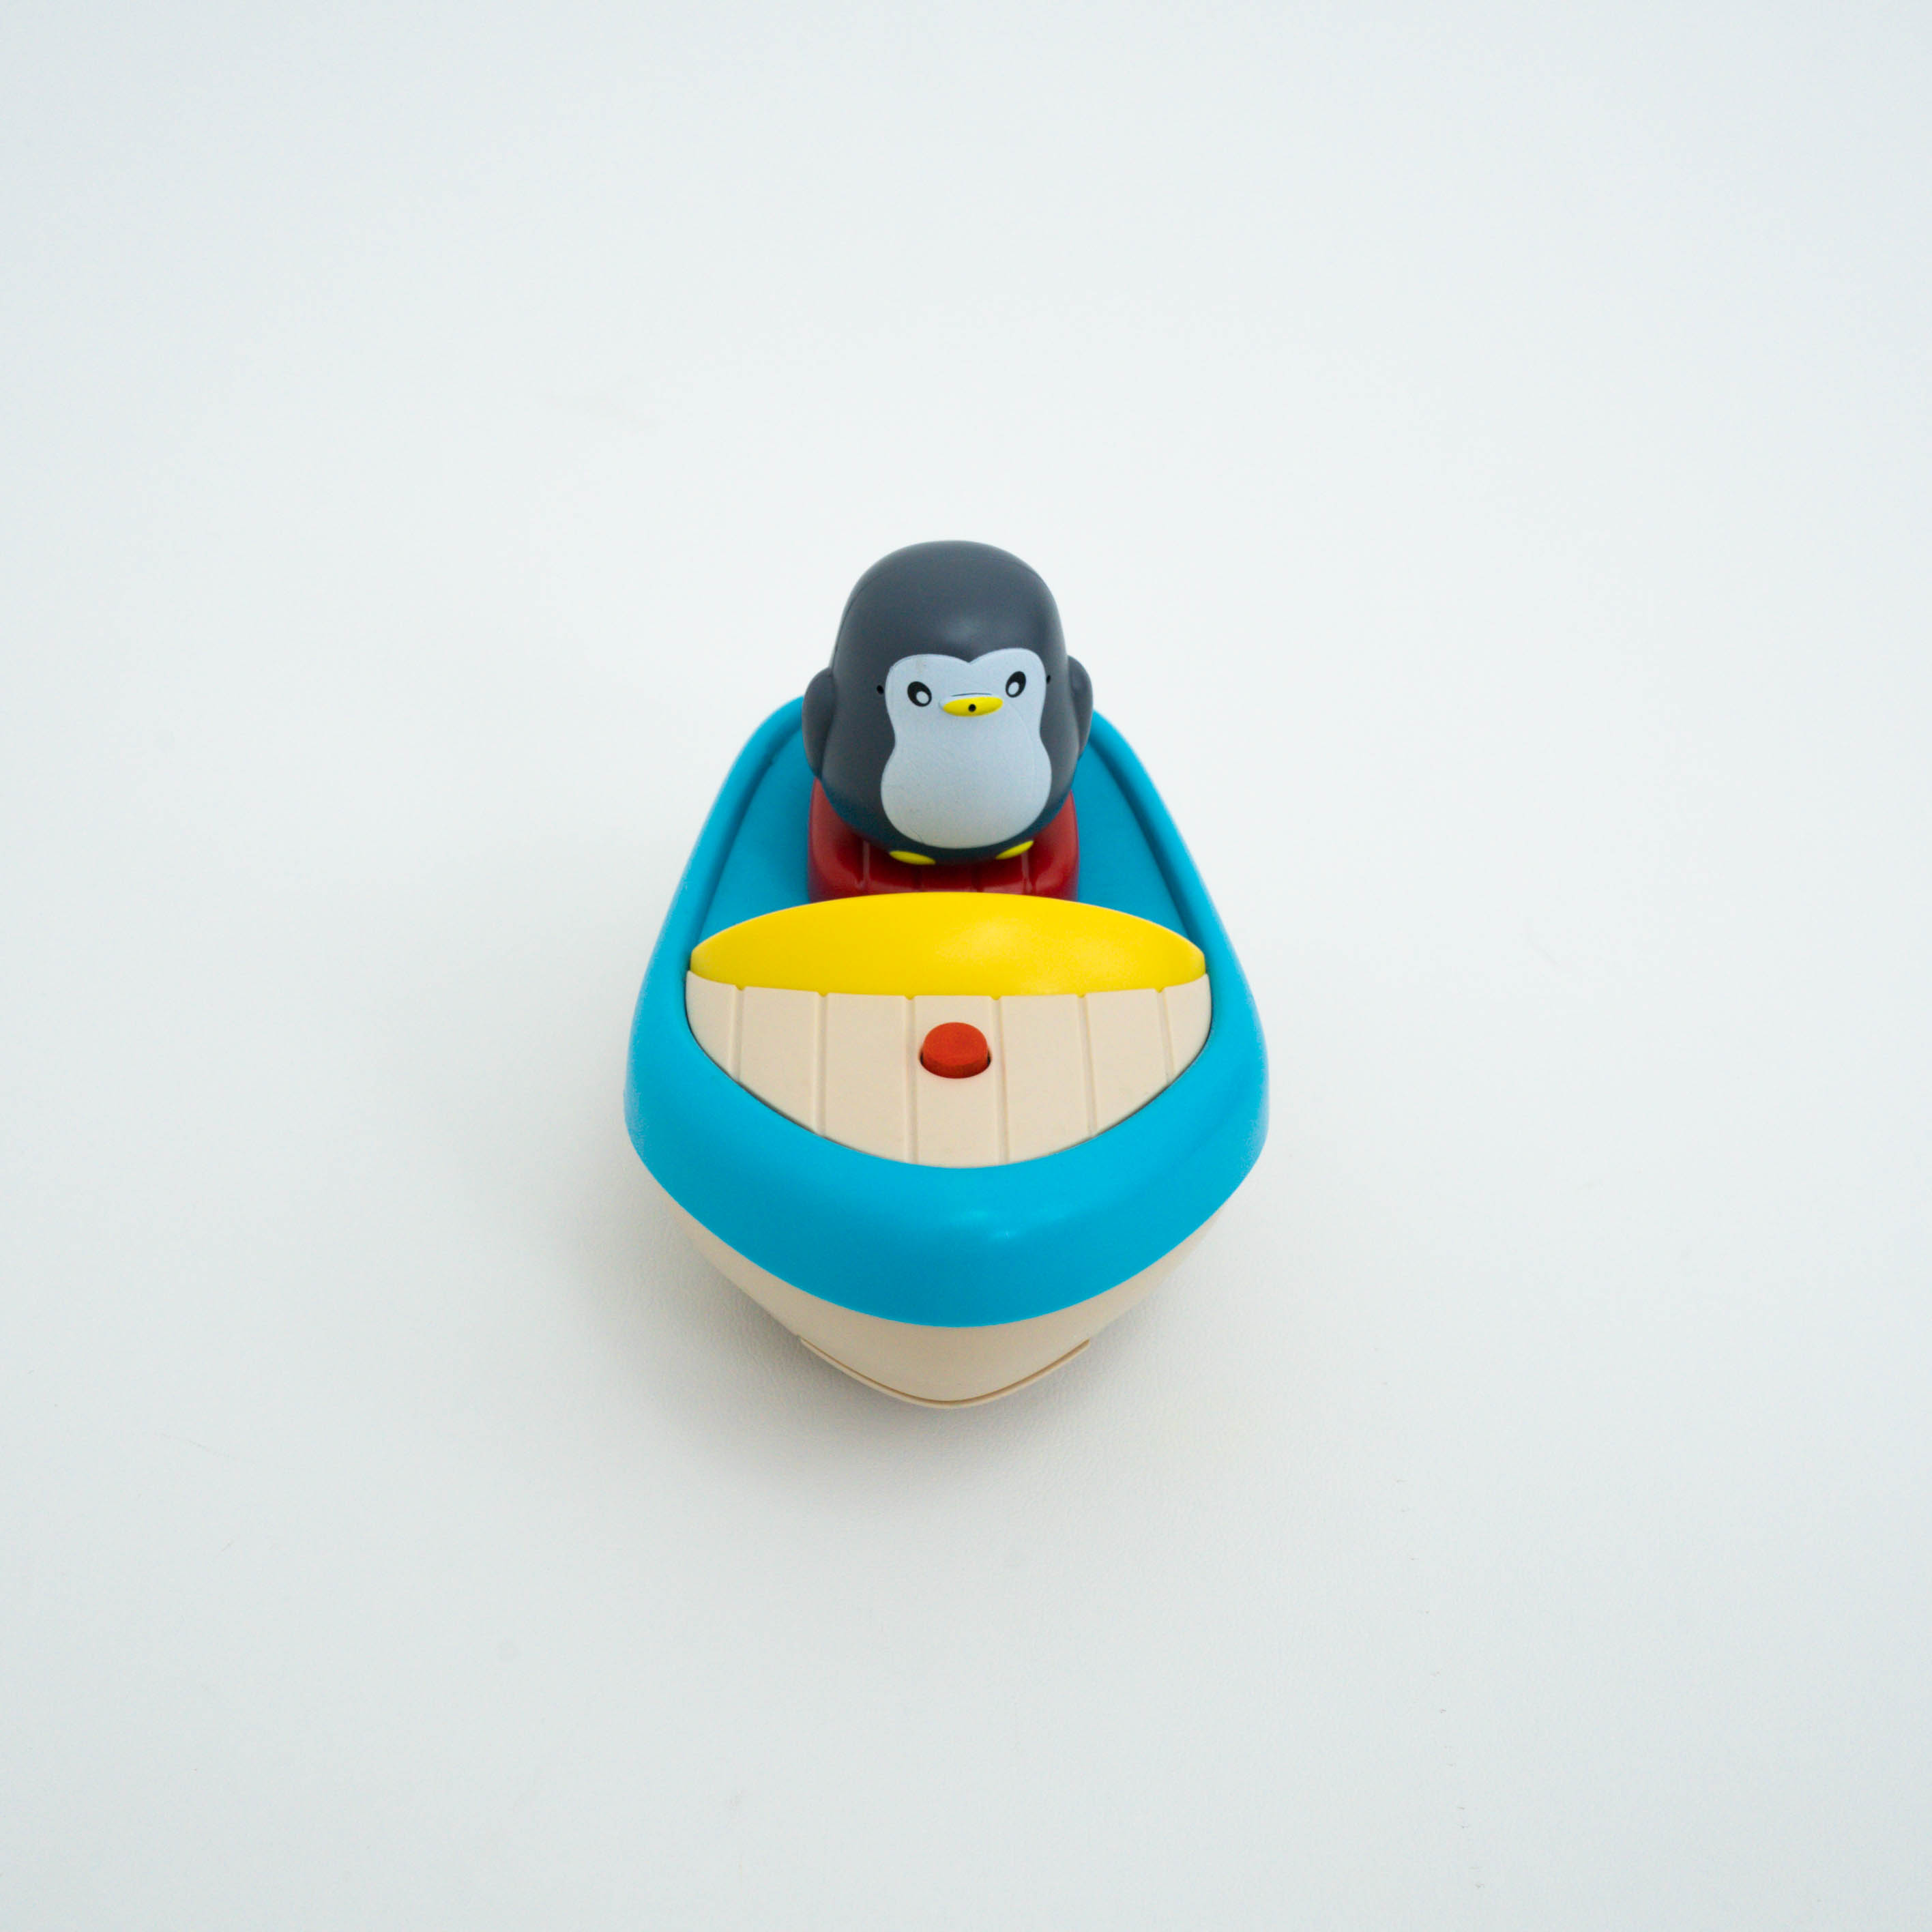 「お風呂おもちゃ」ペンギンの赤ちゃんのお風呂のおもちゃ| 水遊び お風呂おもちゃ お風呂嫌い解消|undefined